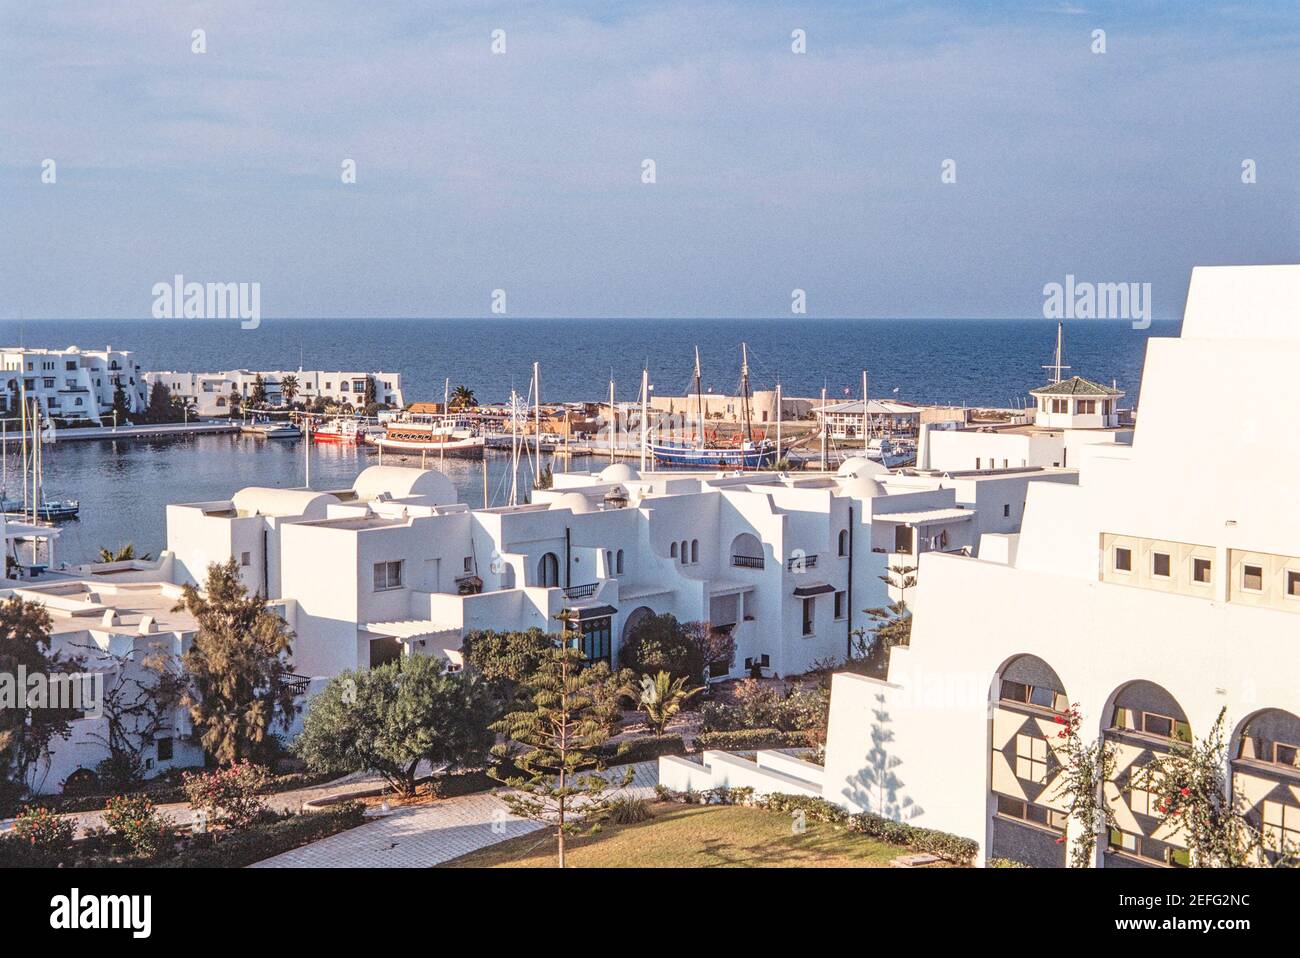 1988 Port El Kantaoui est un complexe touristique situé à 10 kilomètres au nord de Sousse, dans le centre de la Tunisie. Il a été construit en 1979 spécifiquement comme un centre touristique autour d'un grand port artificiel qui fournit amarrage avec 340 postes pour les yachts de luxe et les bateaux. Bateaux de luxe amarrés dans le port de plaisance de Port el Kantaoui, Tunisie, Afrique du Nord Banque D'Images